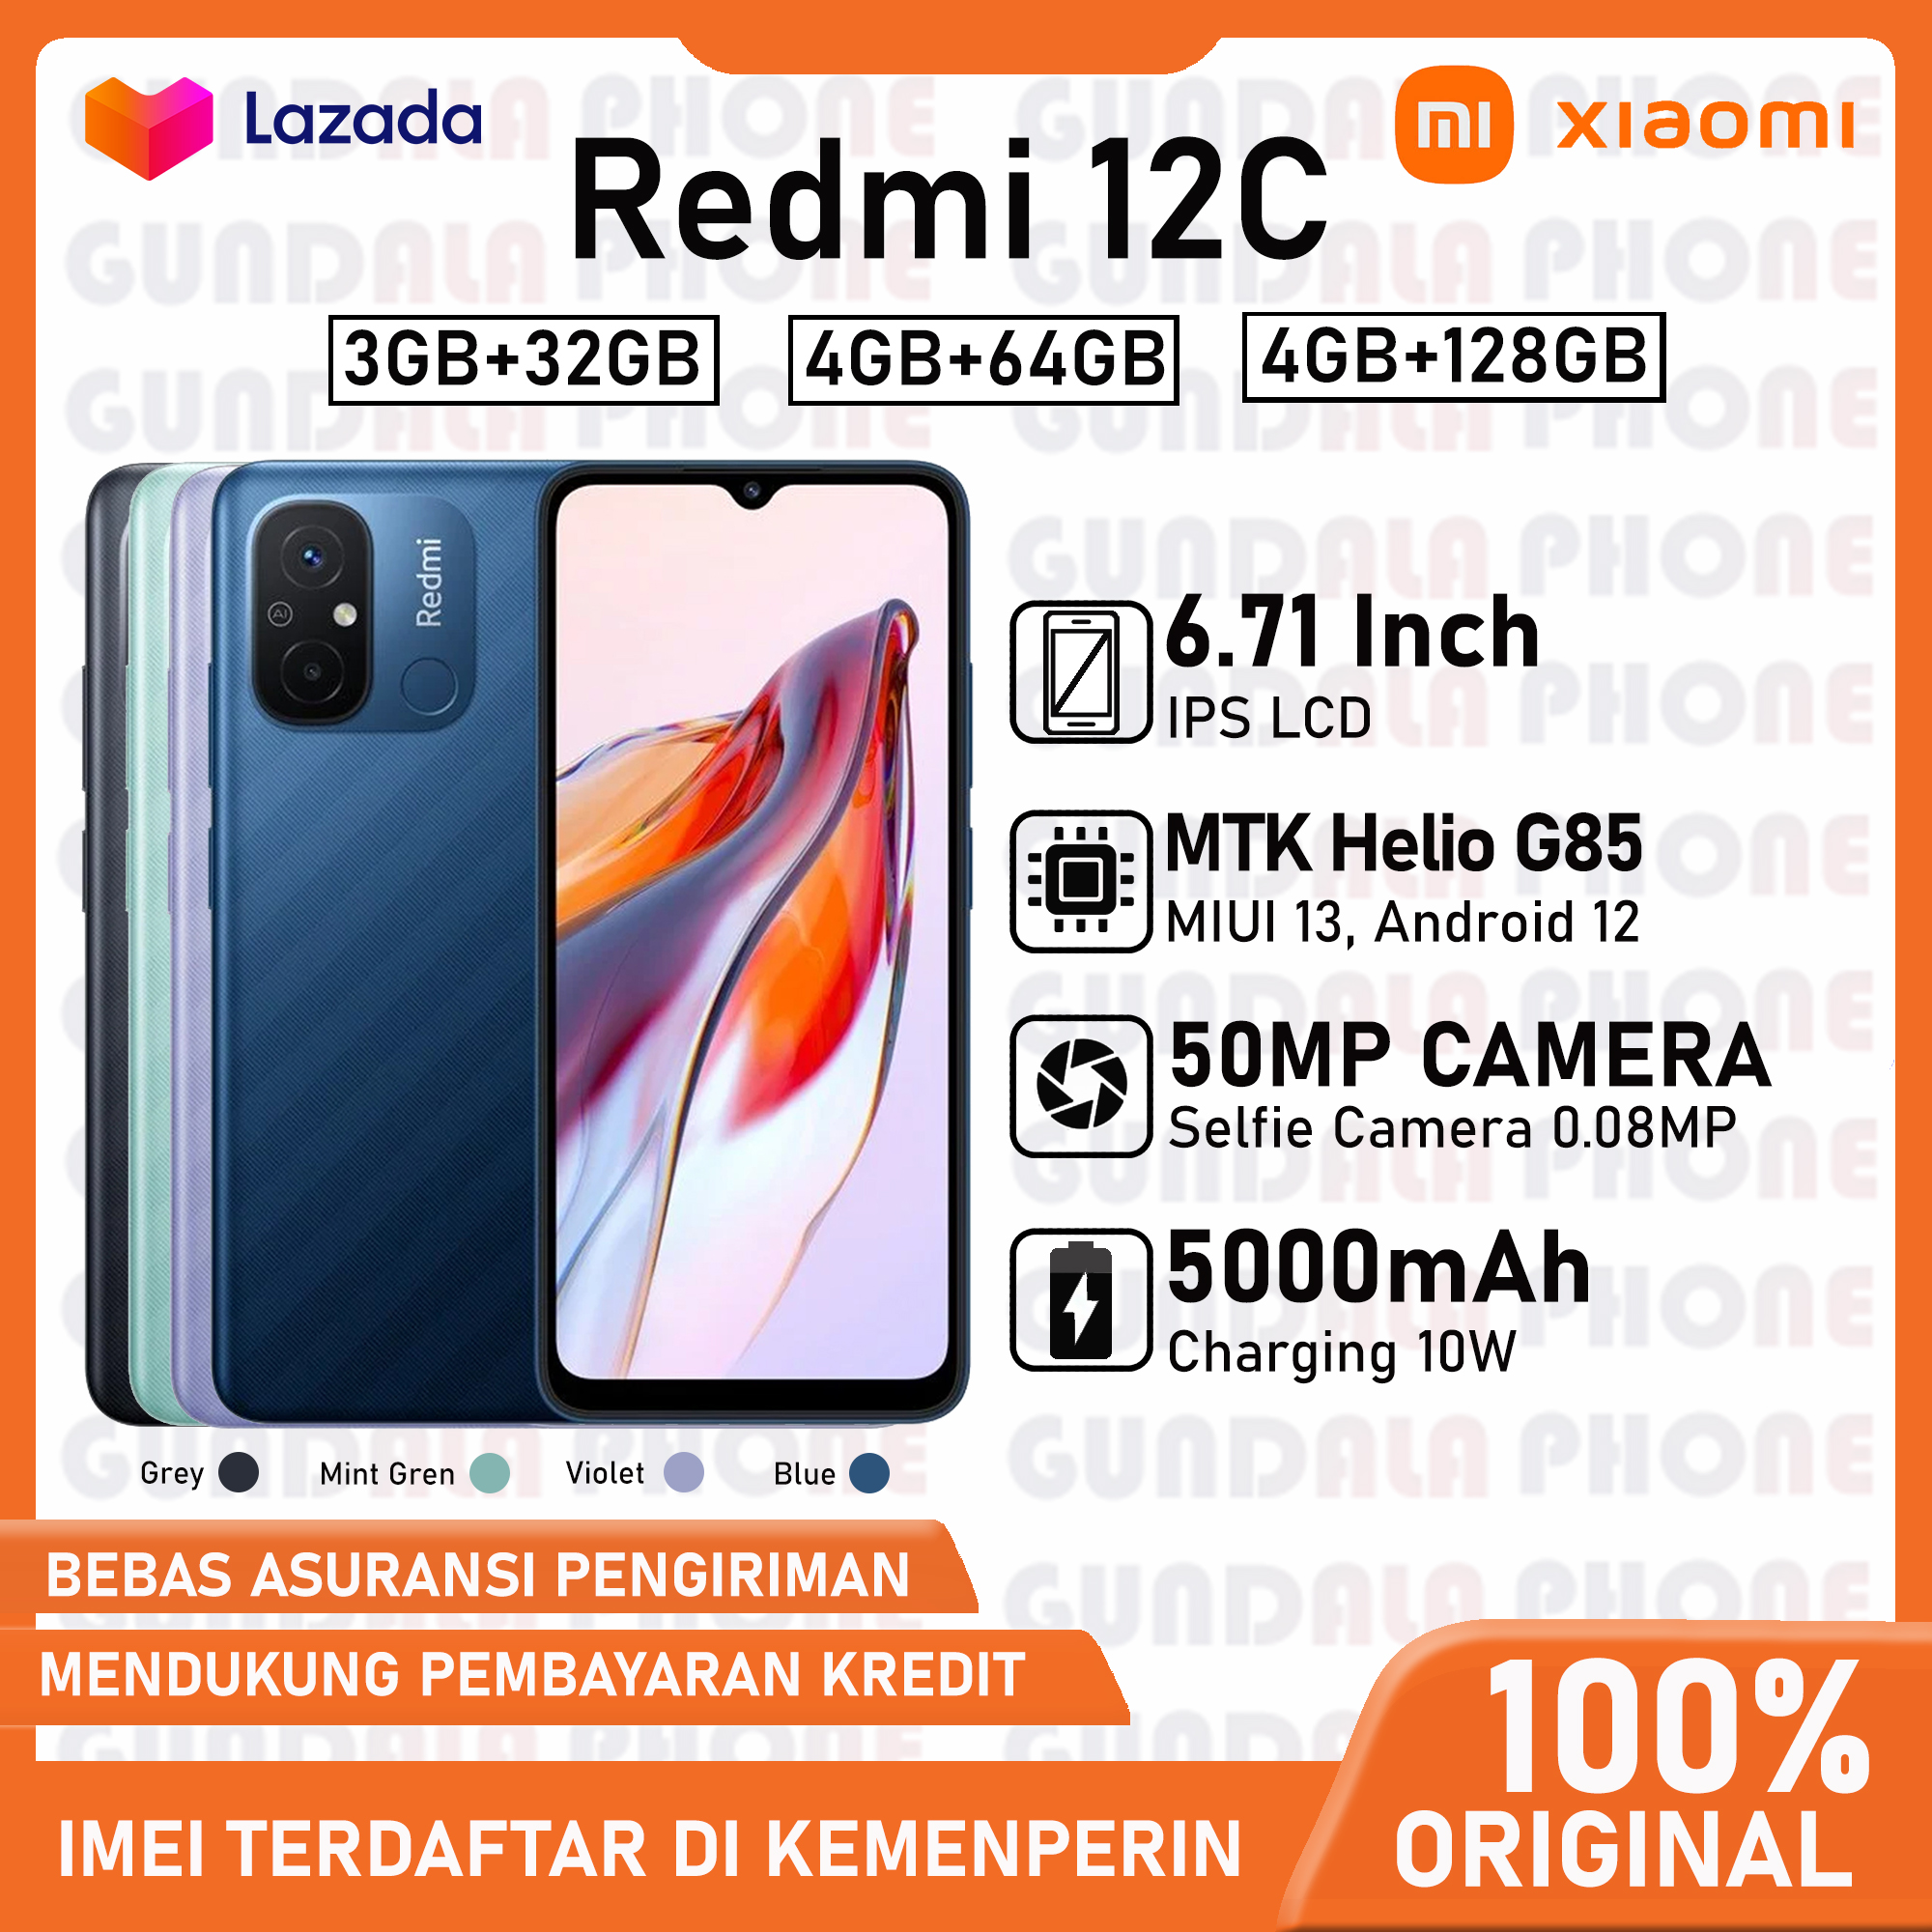  daftar harga dan spesifikasi hp android	 Xiaomi Redmi 12C Dual Camera 50Mp Garansi Resmi 	